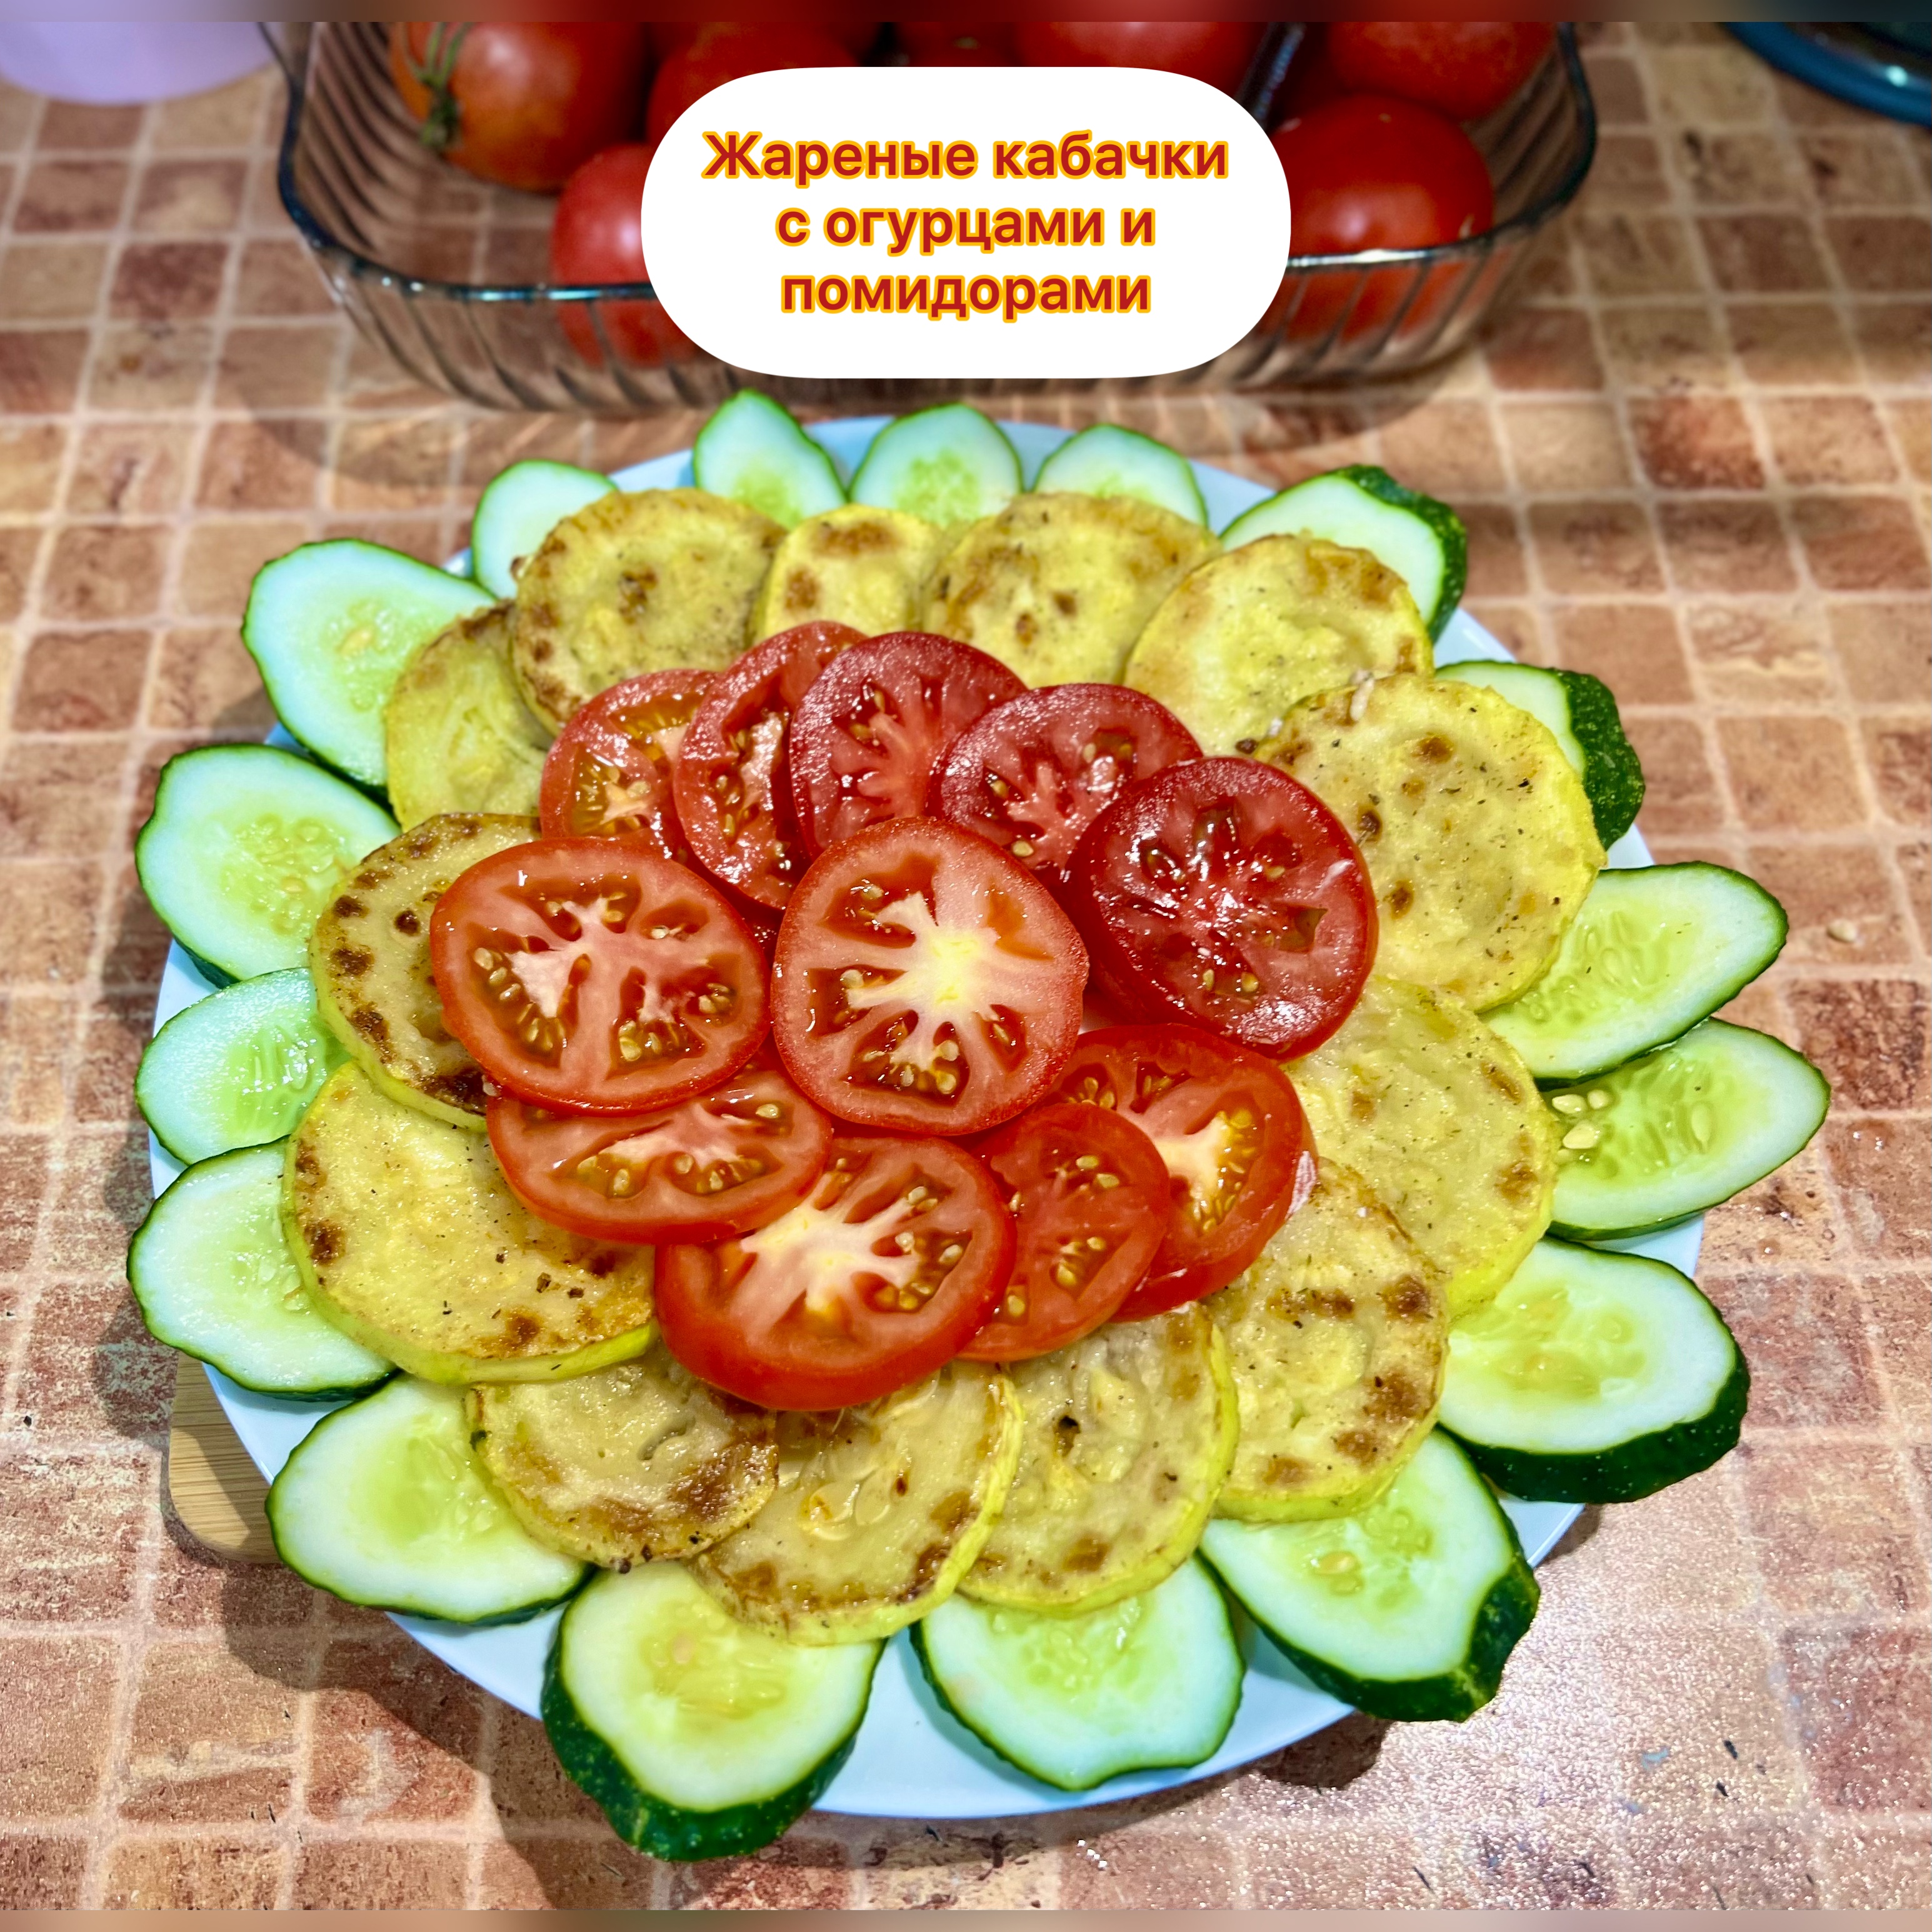 Жареные кабачки с помидорами и чесноком - рецепт приготовления с фото от баштрен.рф